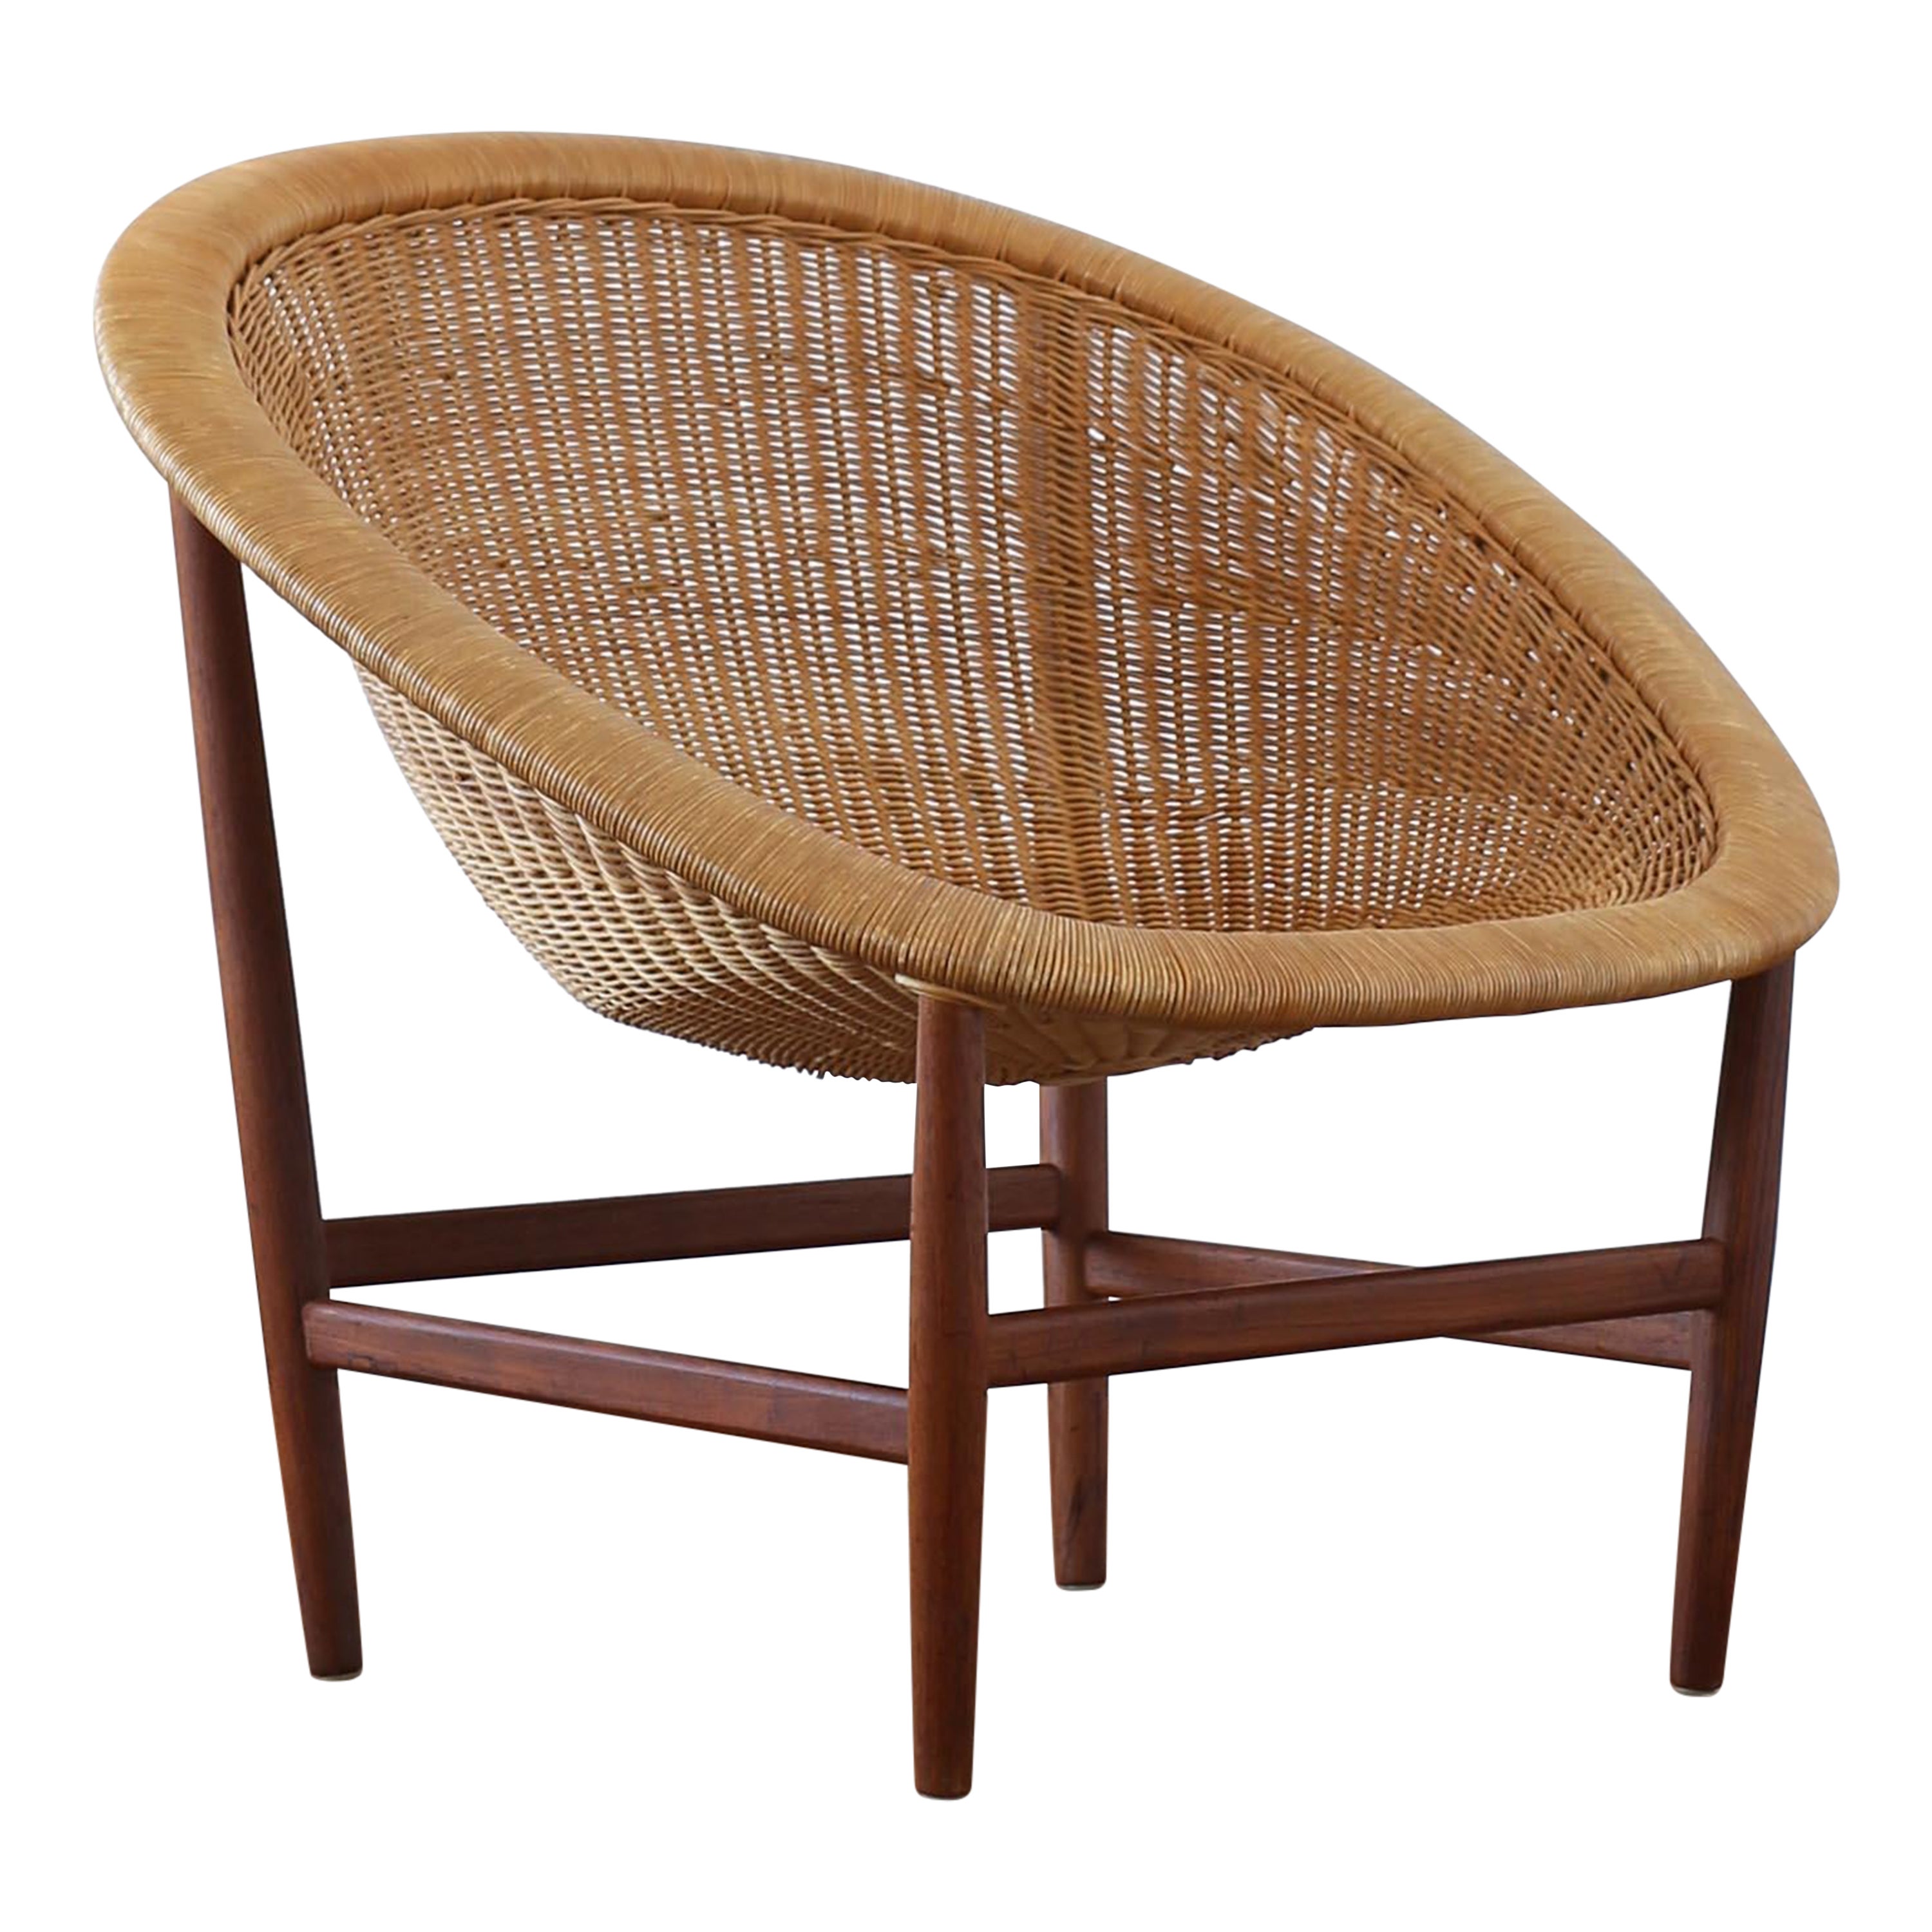 Early Nanna Ditzel 'Basket chair' for Ludvig Pontoppidan, Denmark, 1950